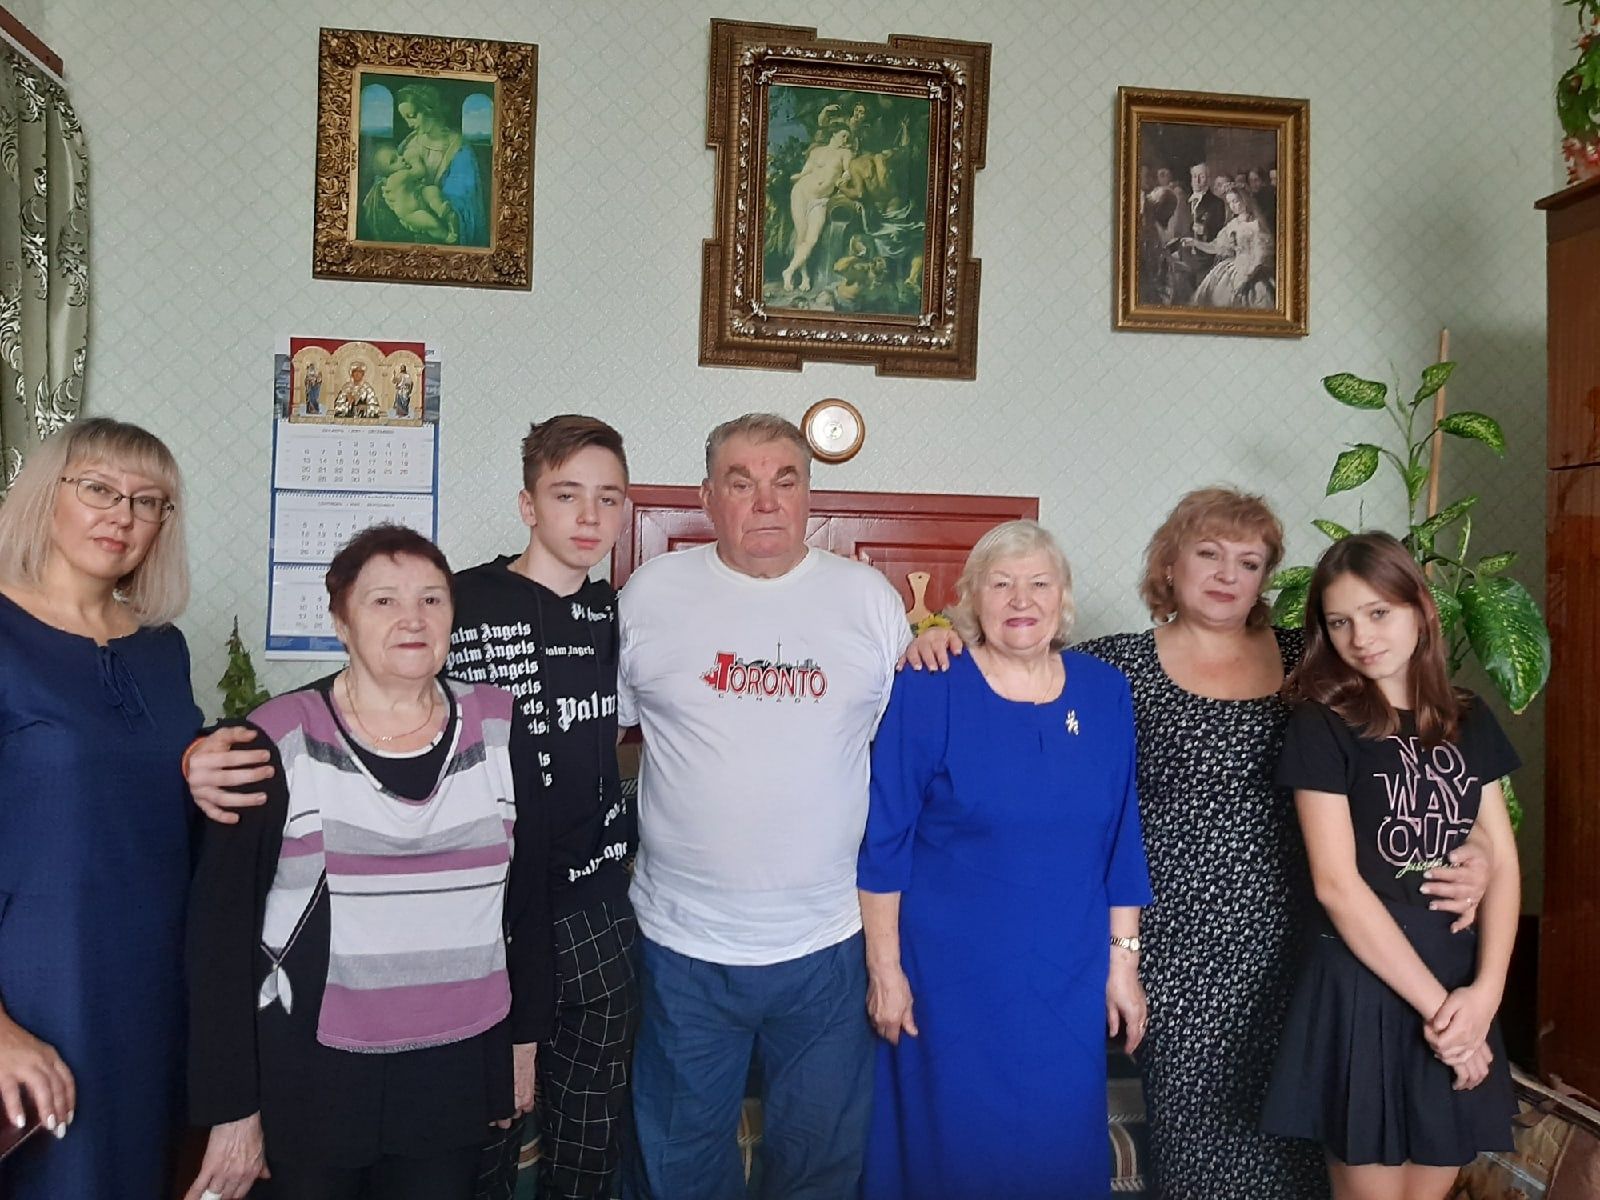 55 лет совместной жизни отметили Владимир и Алевтина Севастьяновы из Верхнего Услона